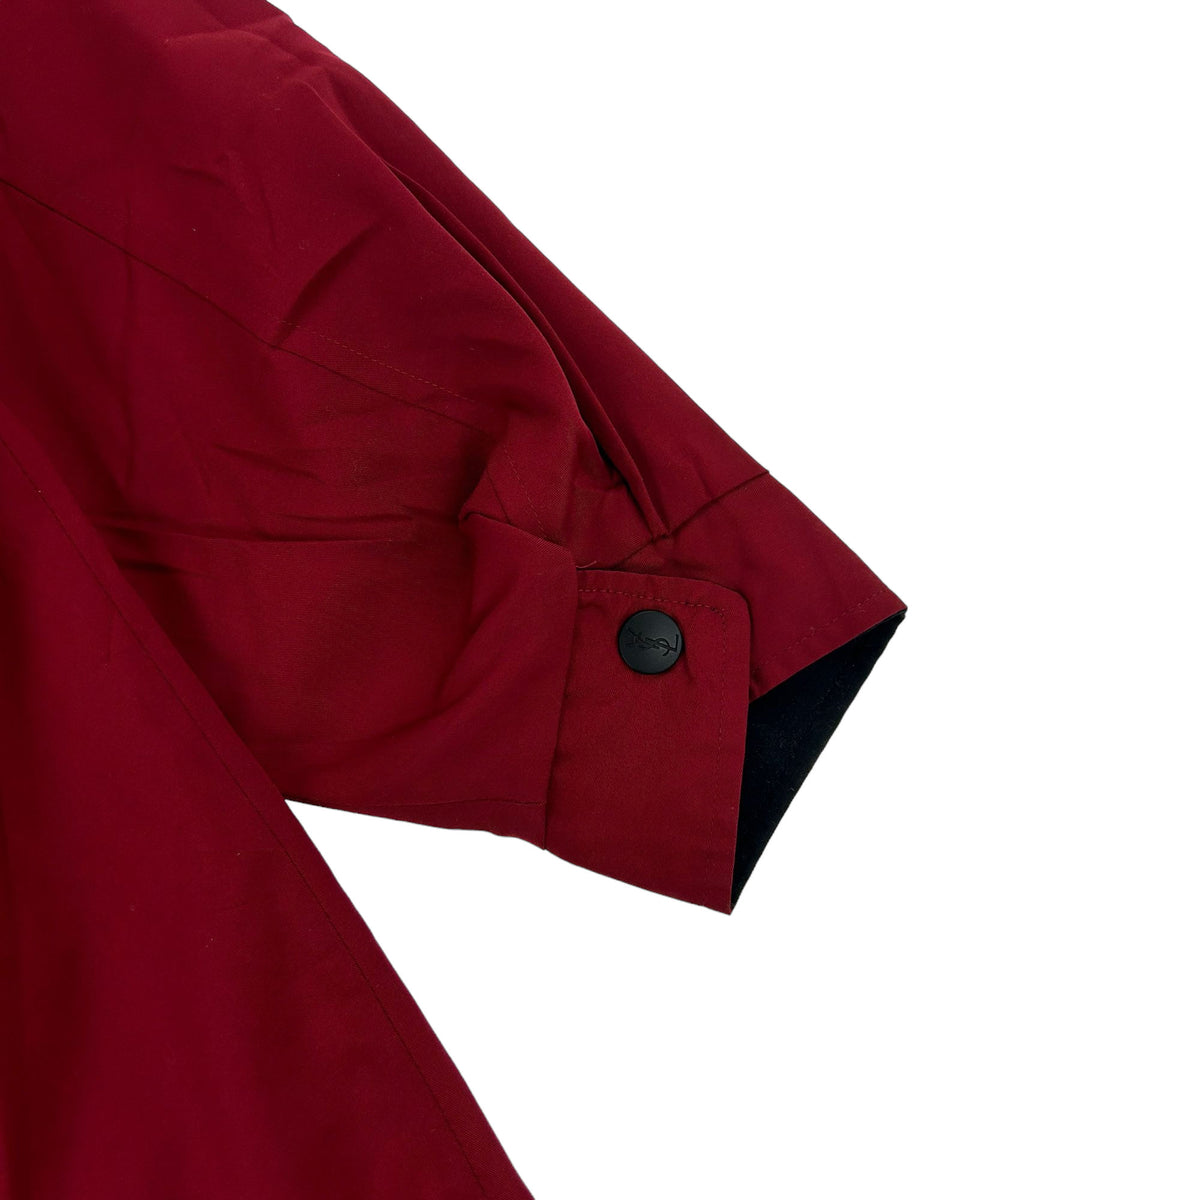 Vintage Yves Saint Laurent Reversible Jacket Size L